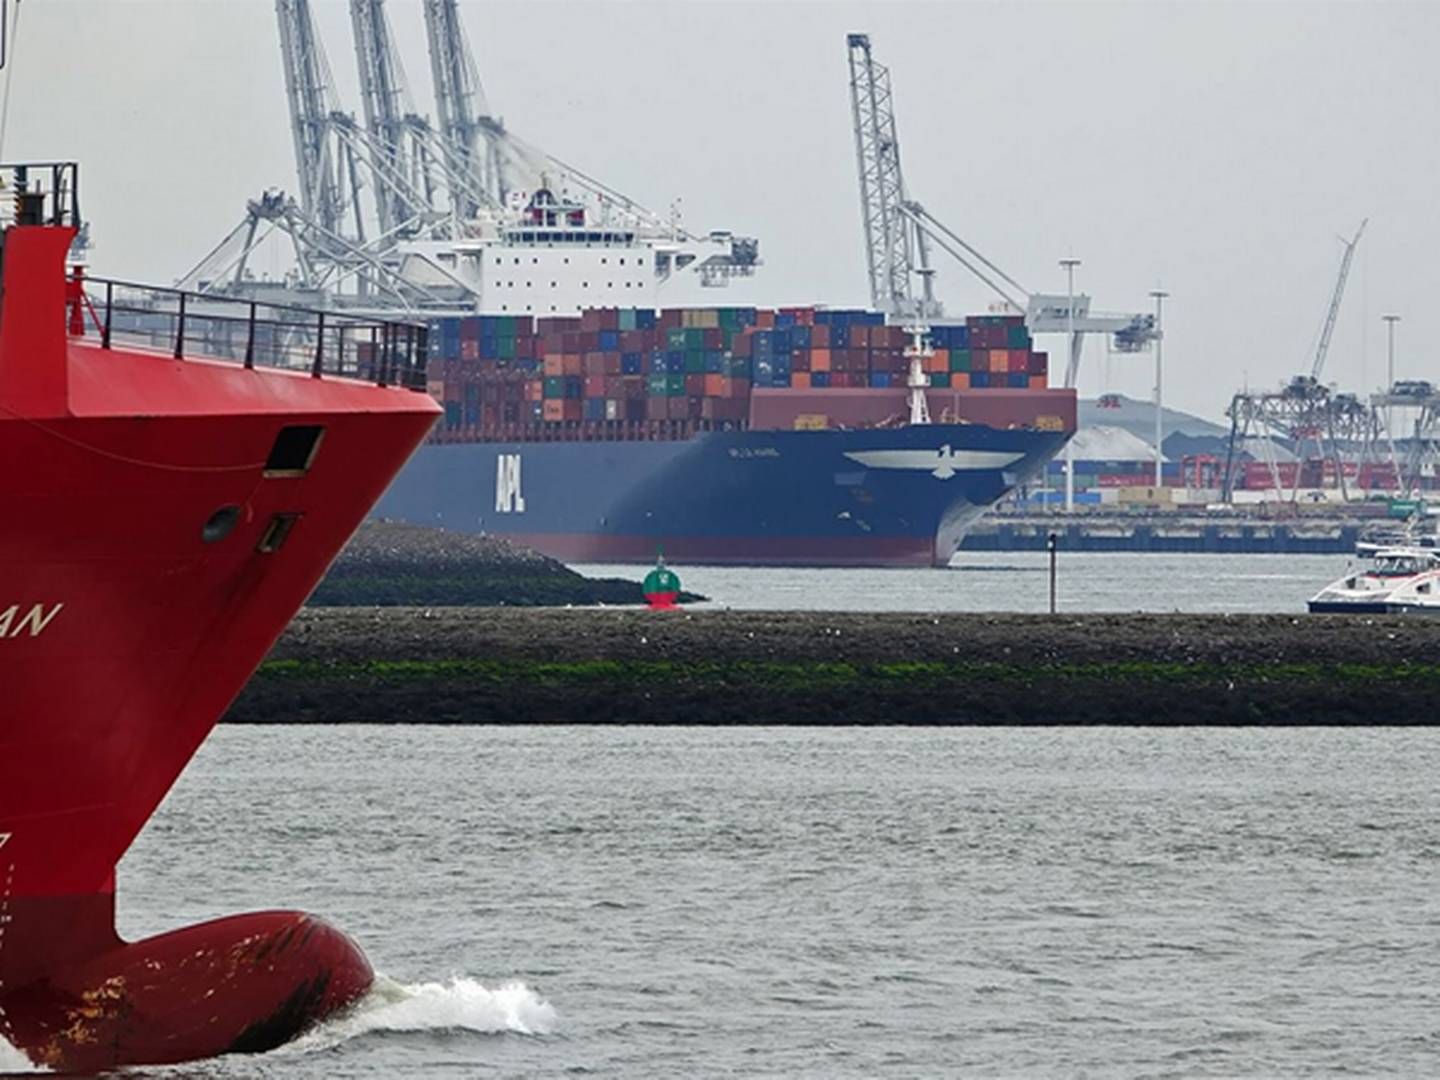 Arkivfoto. Ingen af skibene på billedet vedrører historien. | Photo: Port of Rotterdam/Kees Torn